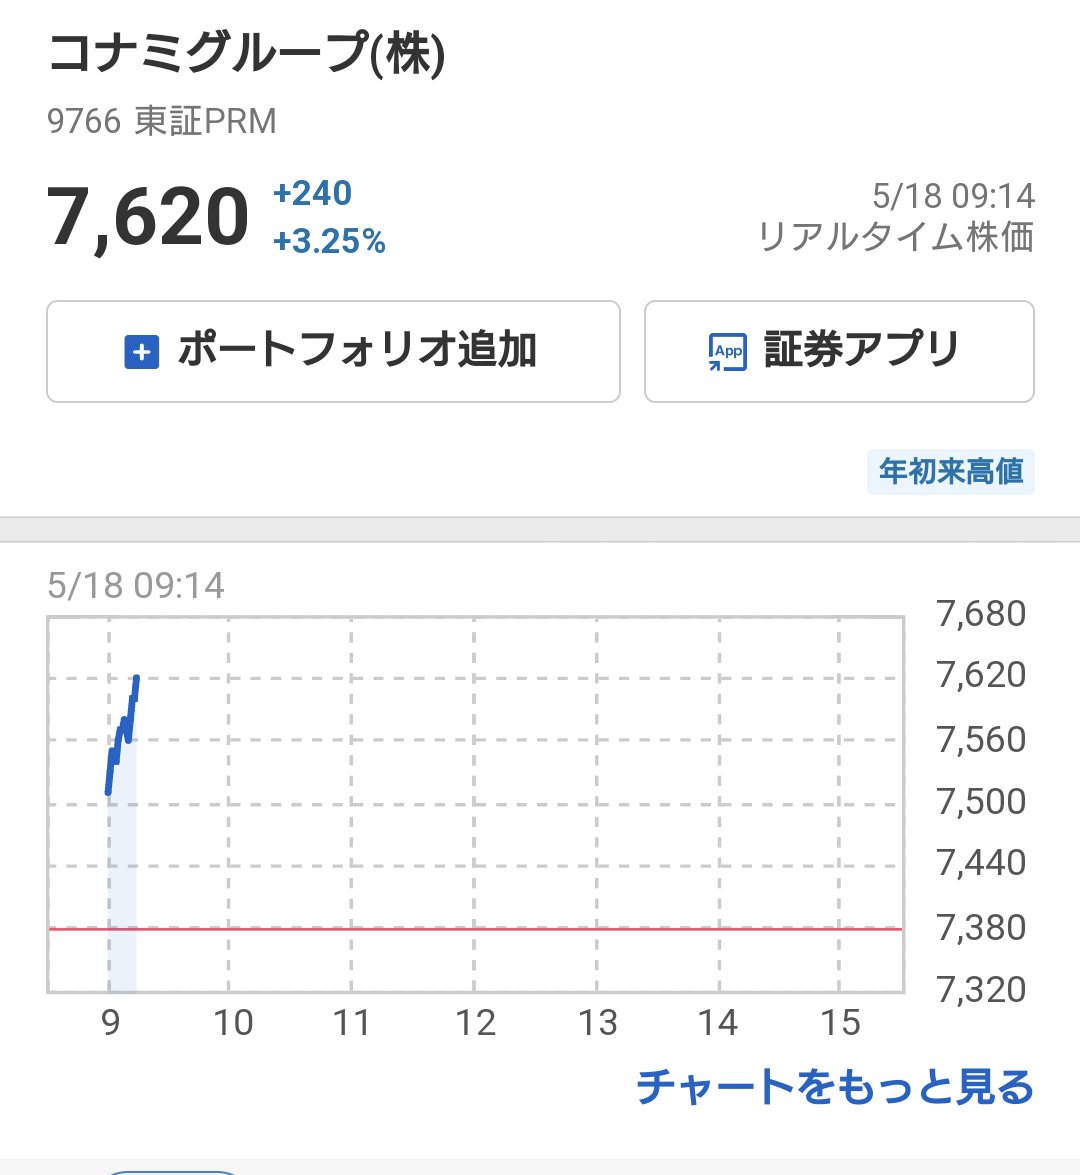 [情報] KONAMI股票上漲3.25%